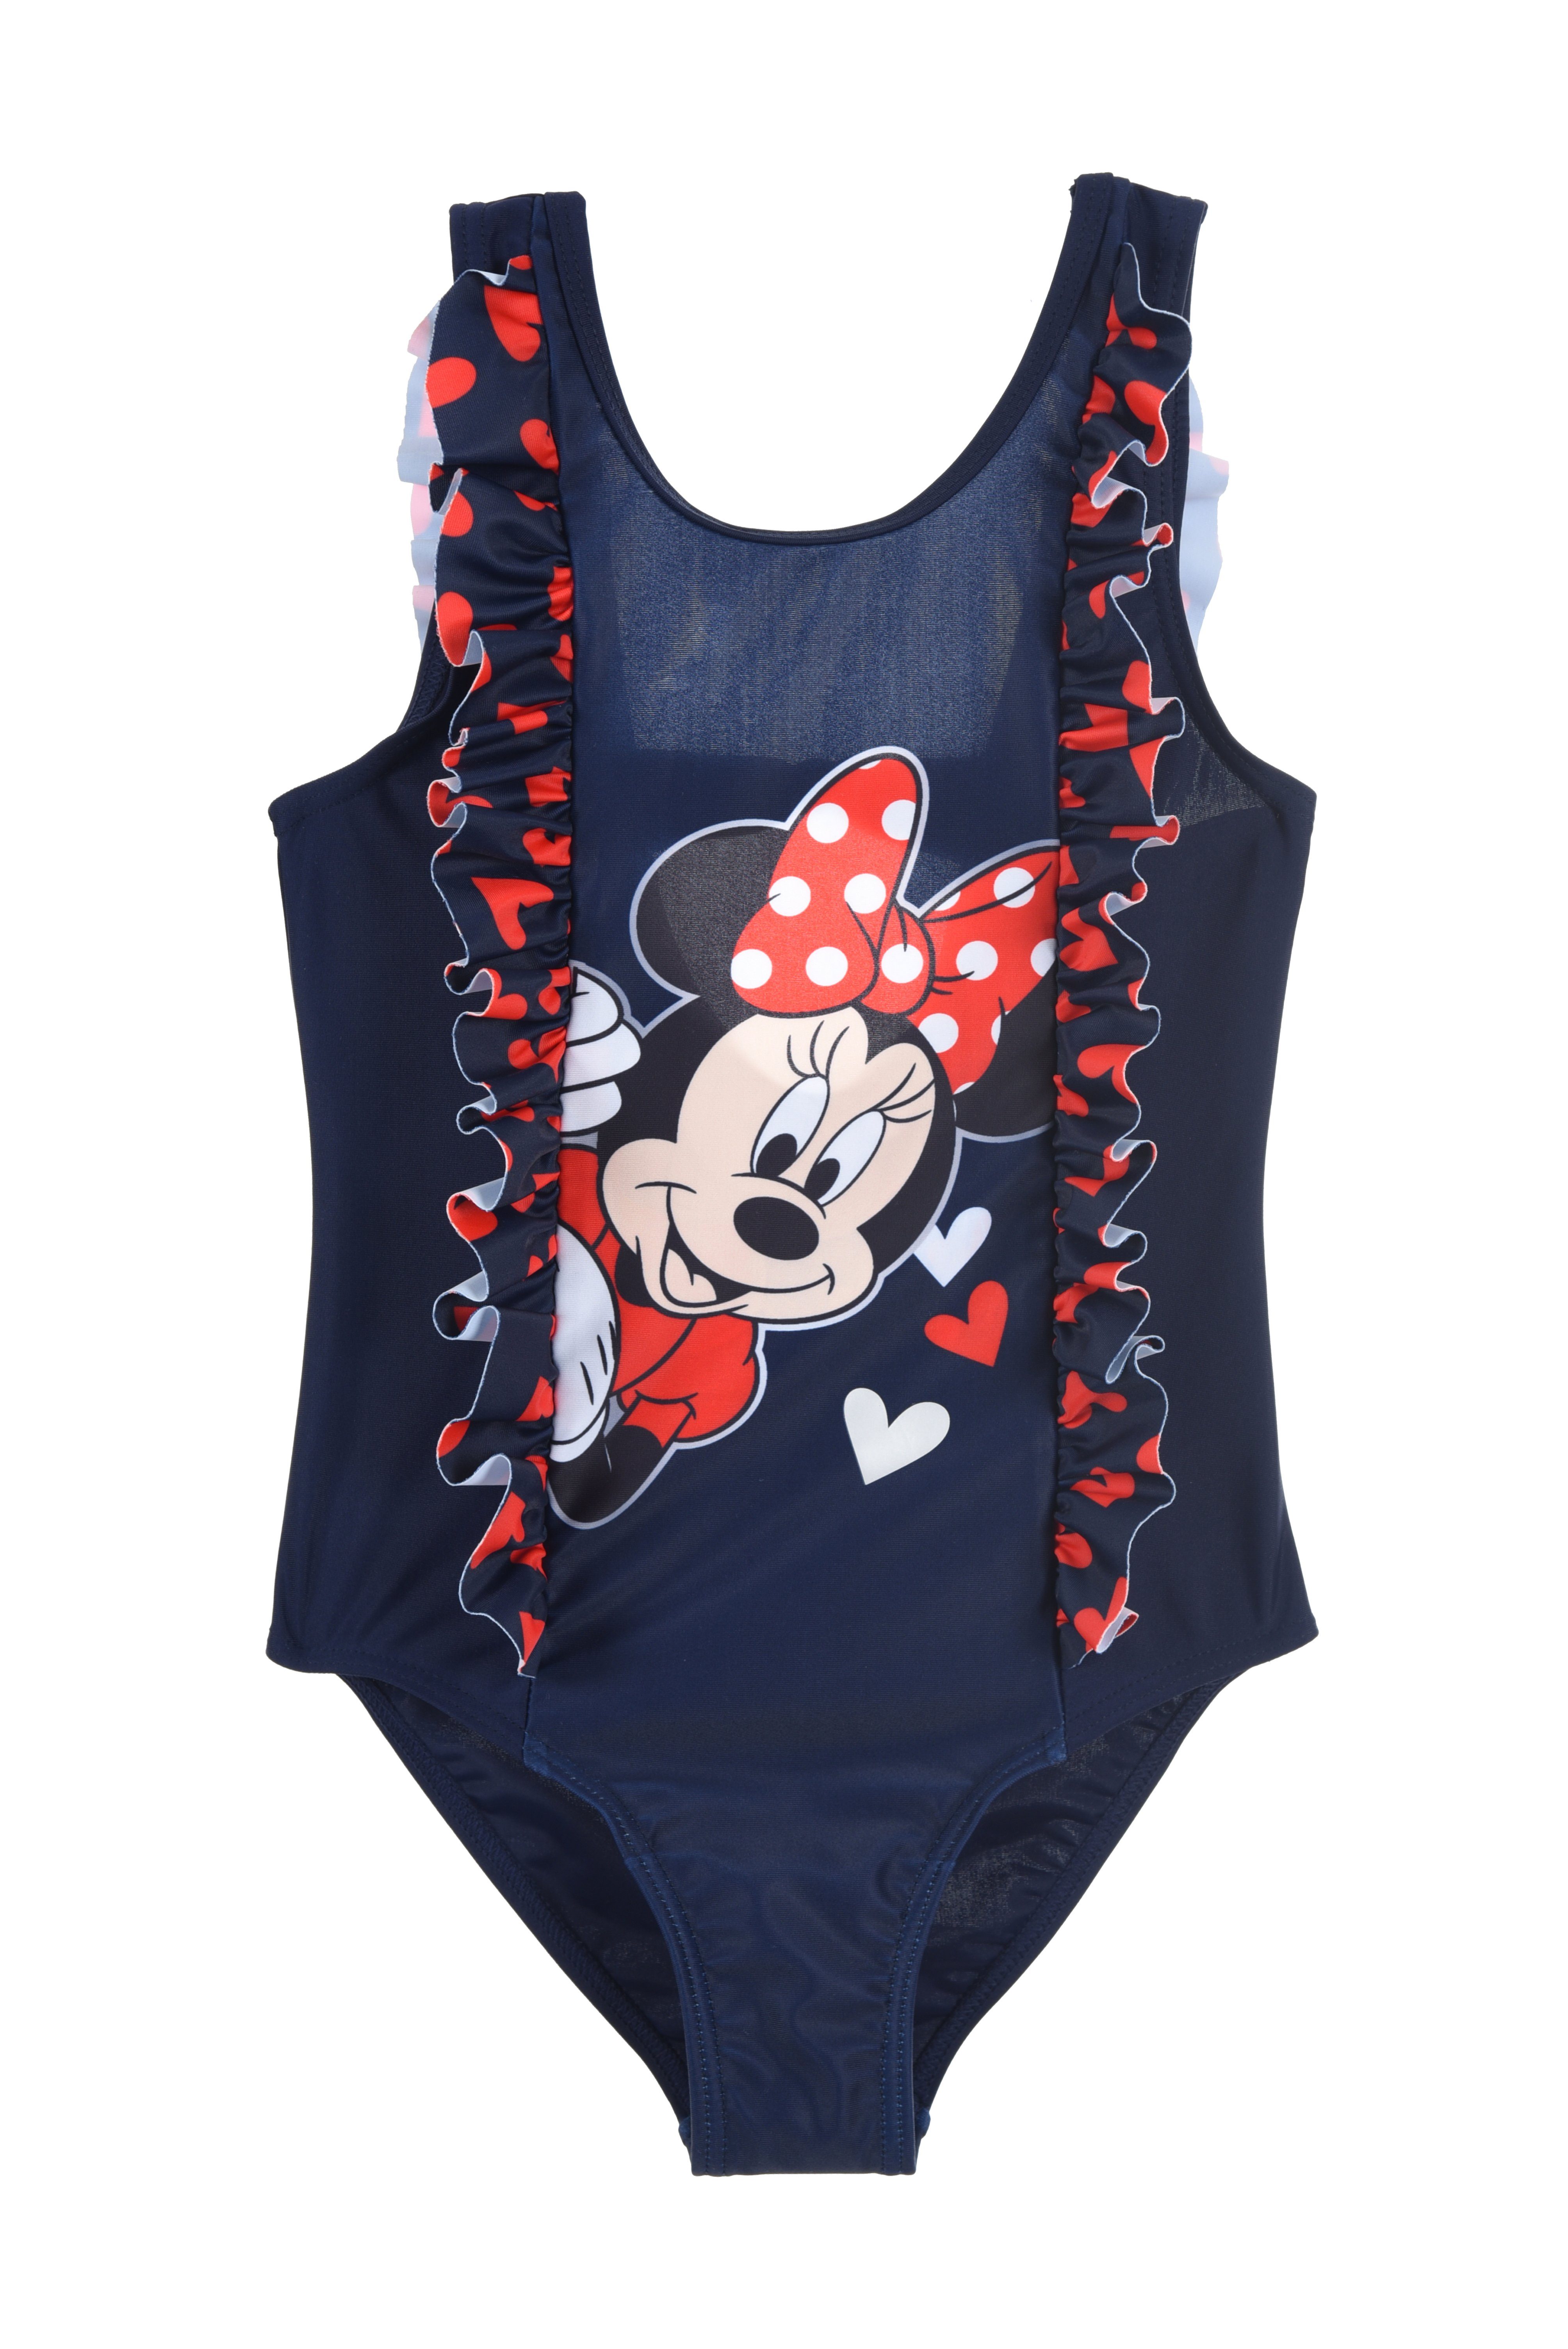 Disney Badeanzug Disney Minnie Maus Kinder Mädchen Badeanzug Bademode Gr. 98 bis 128